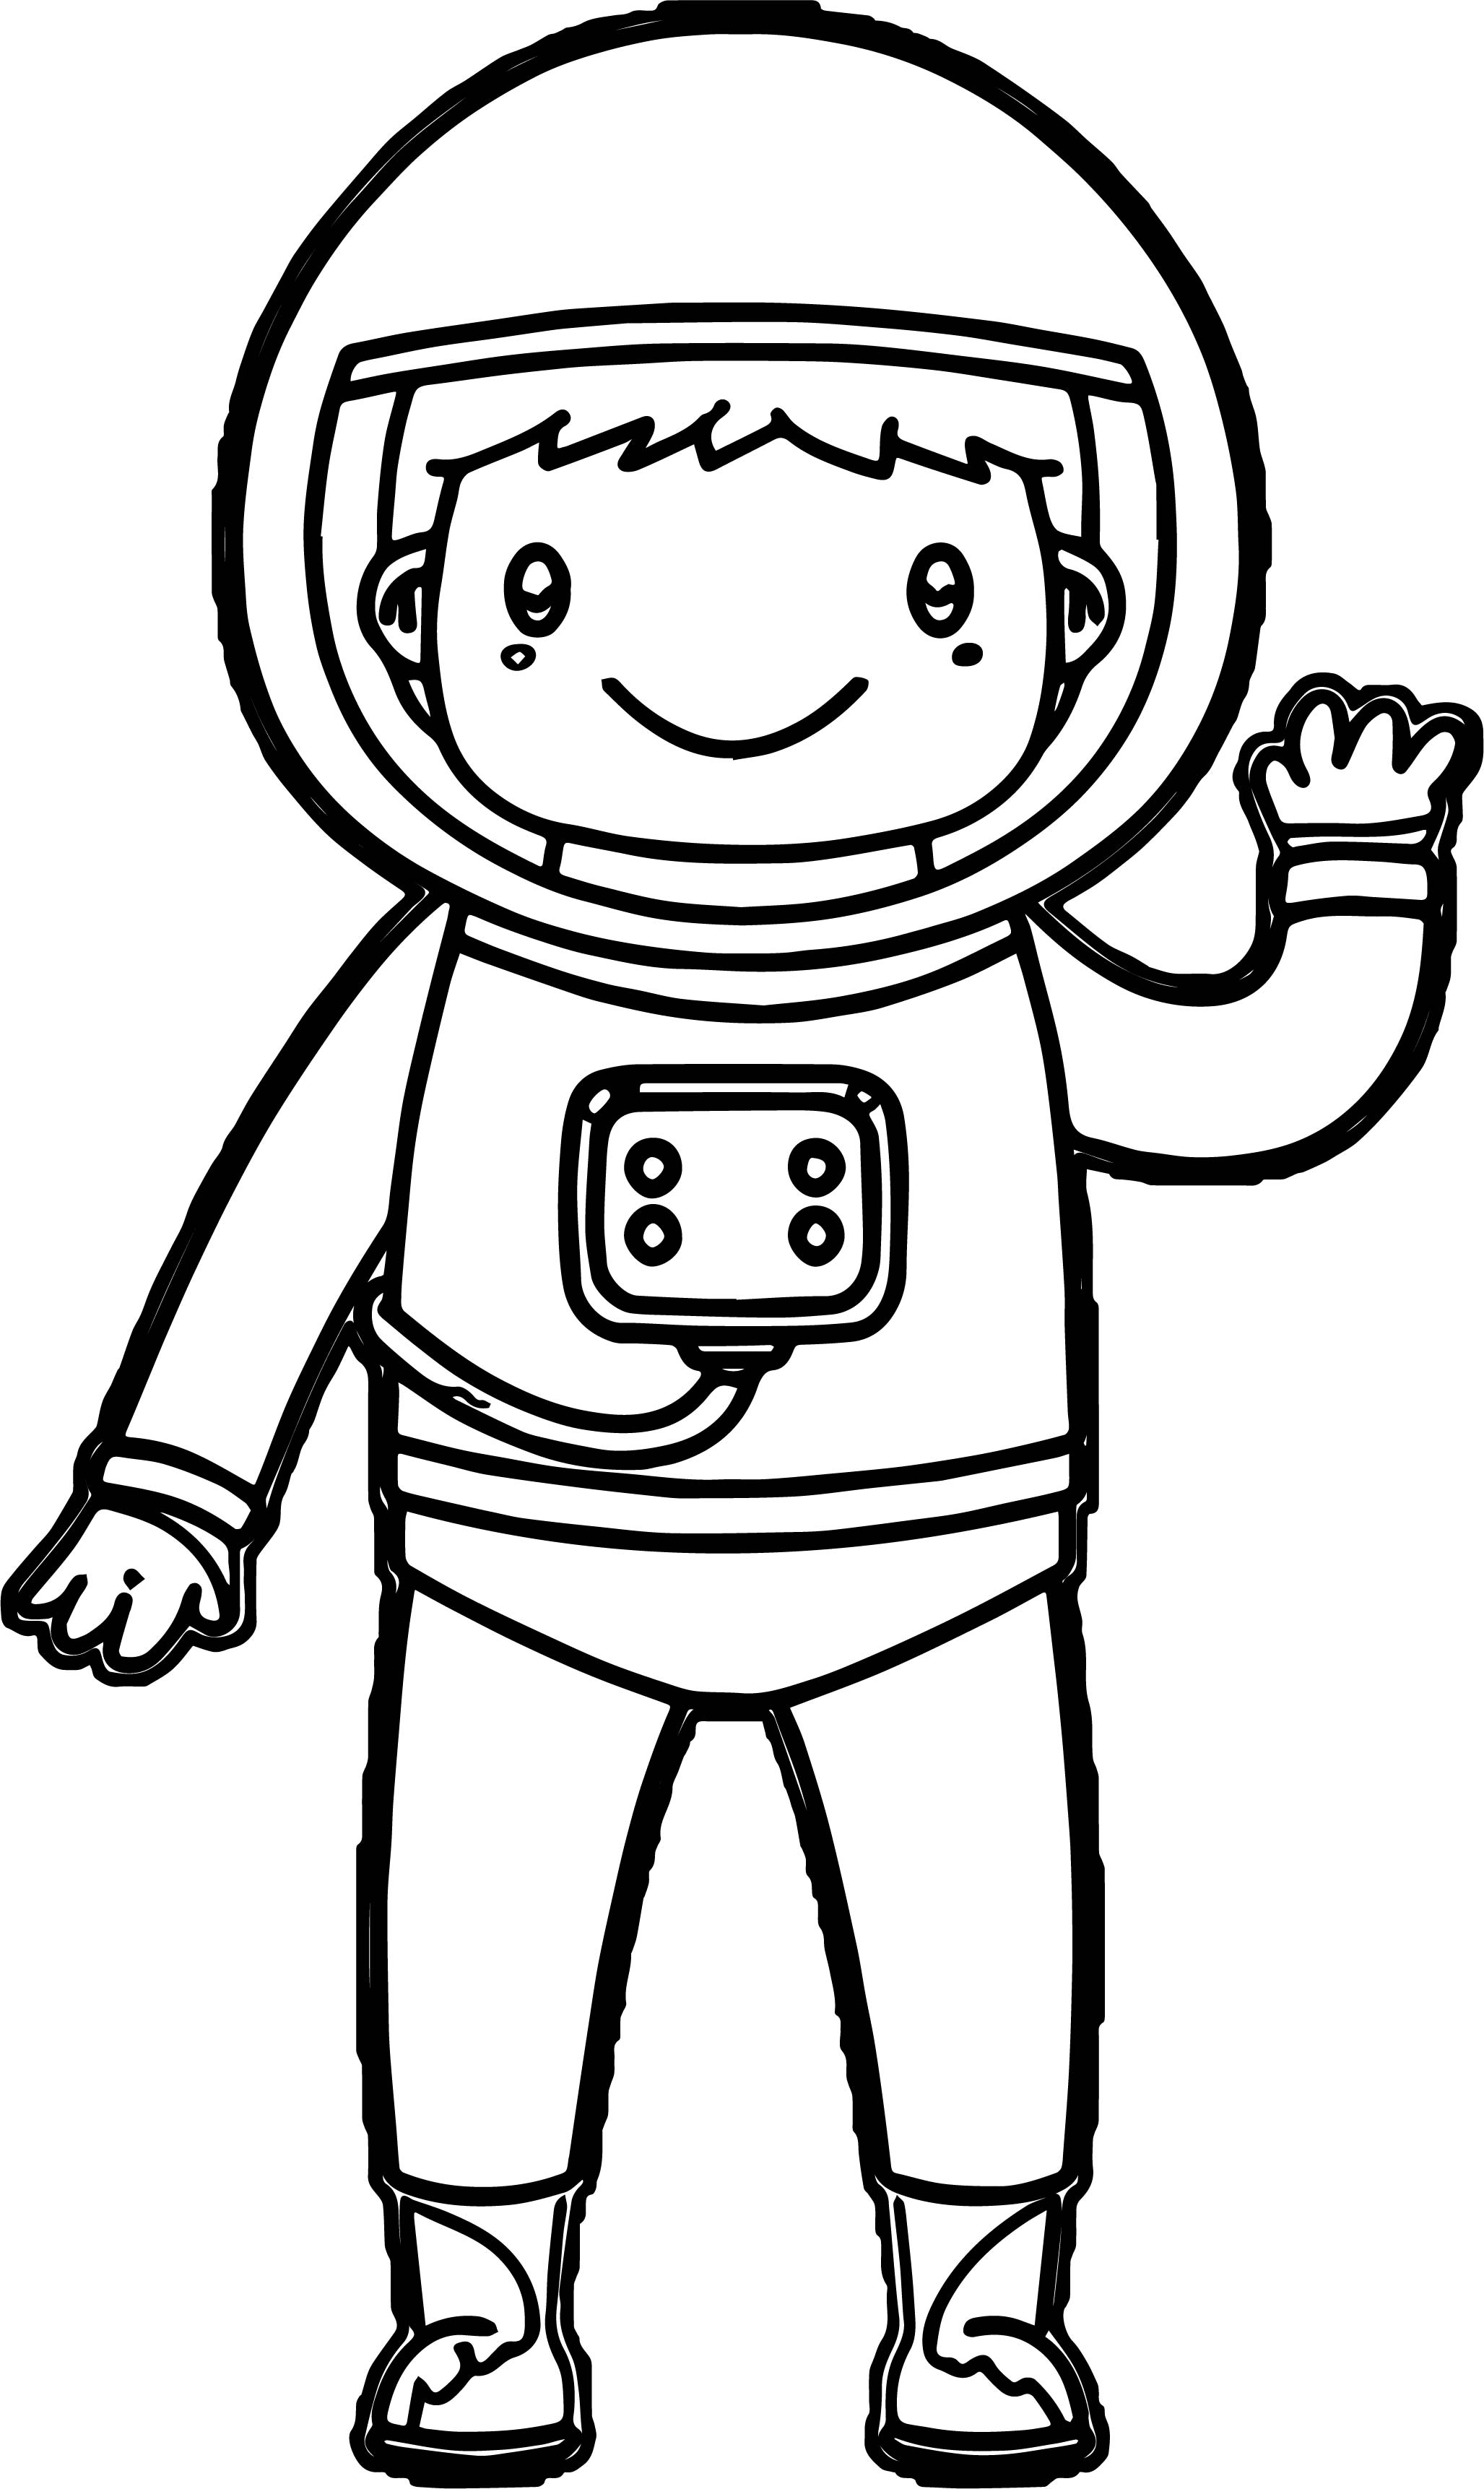 Скафандр раскраска. Космонавт раскраска для детей. Космонавт рисунок. Космонавт для раскрашивания для детей. Скафандр Космонавта рисунок.